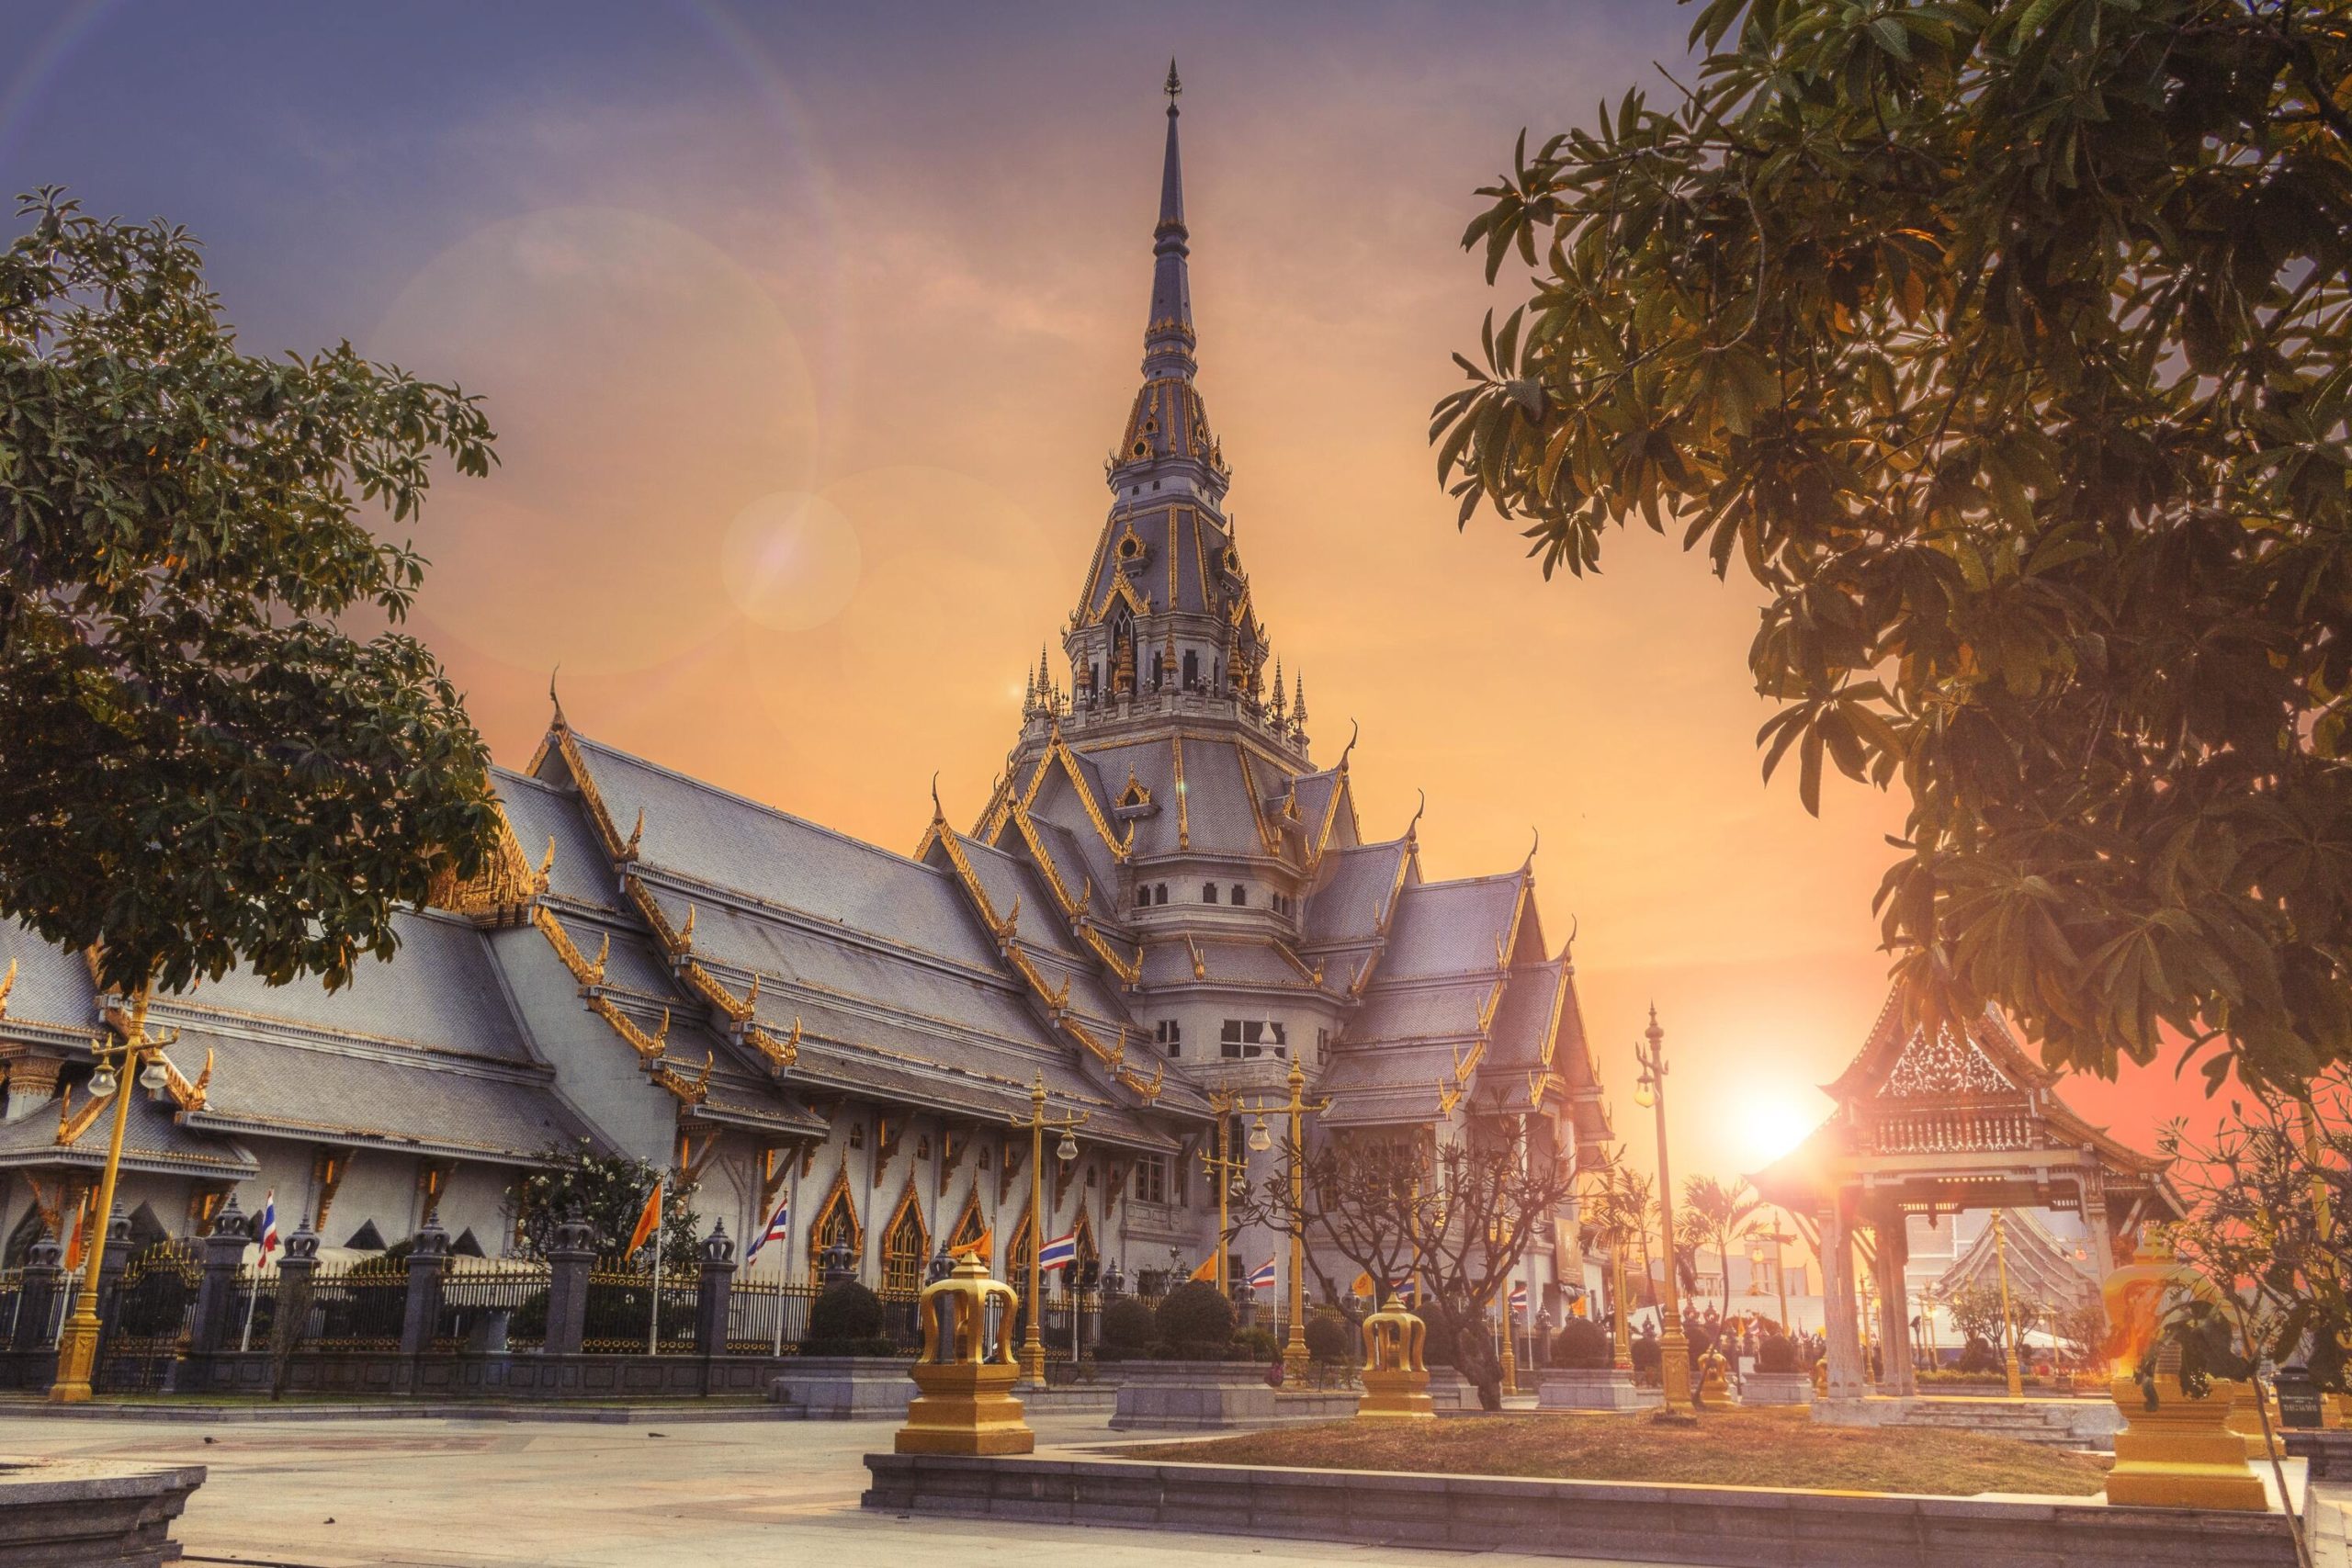  Strategi Memvaksin Satu Pulau Untuk Meningkatkan Turis di Thailand